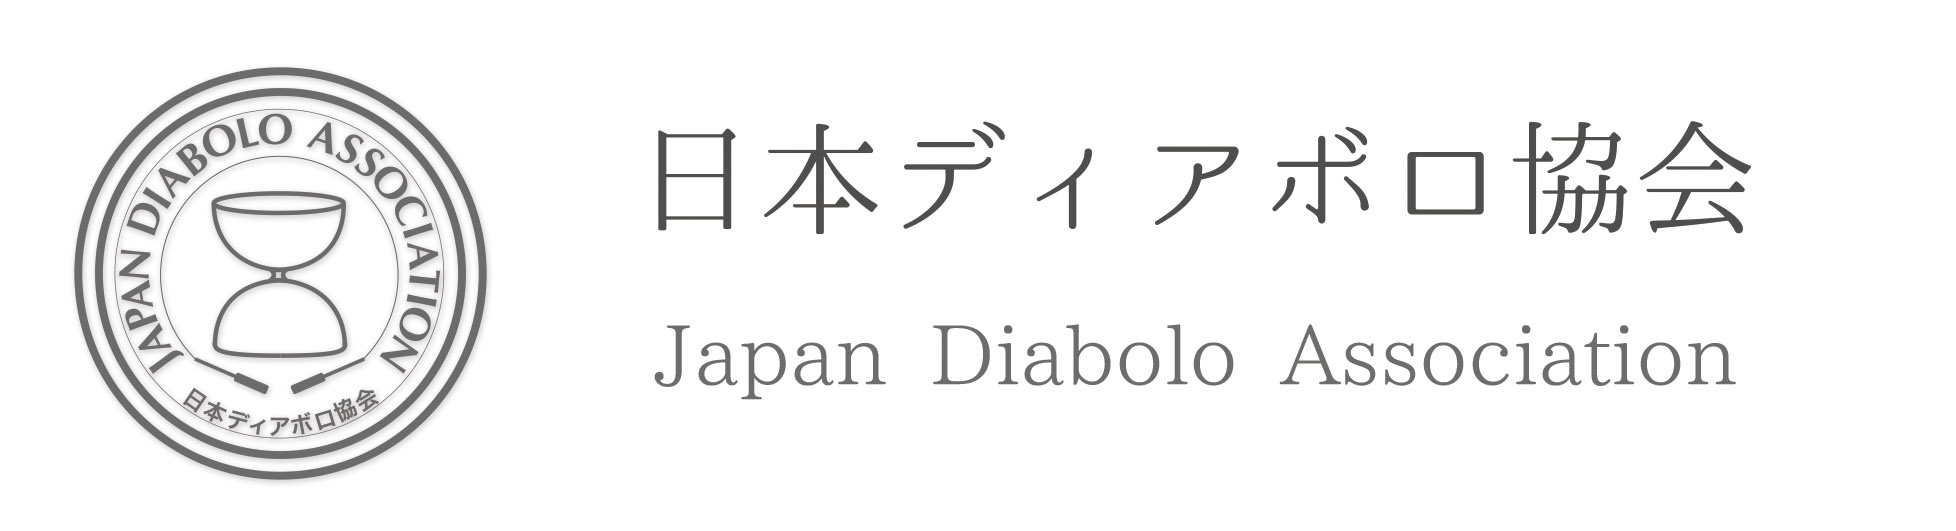 japan diabolo association